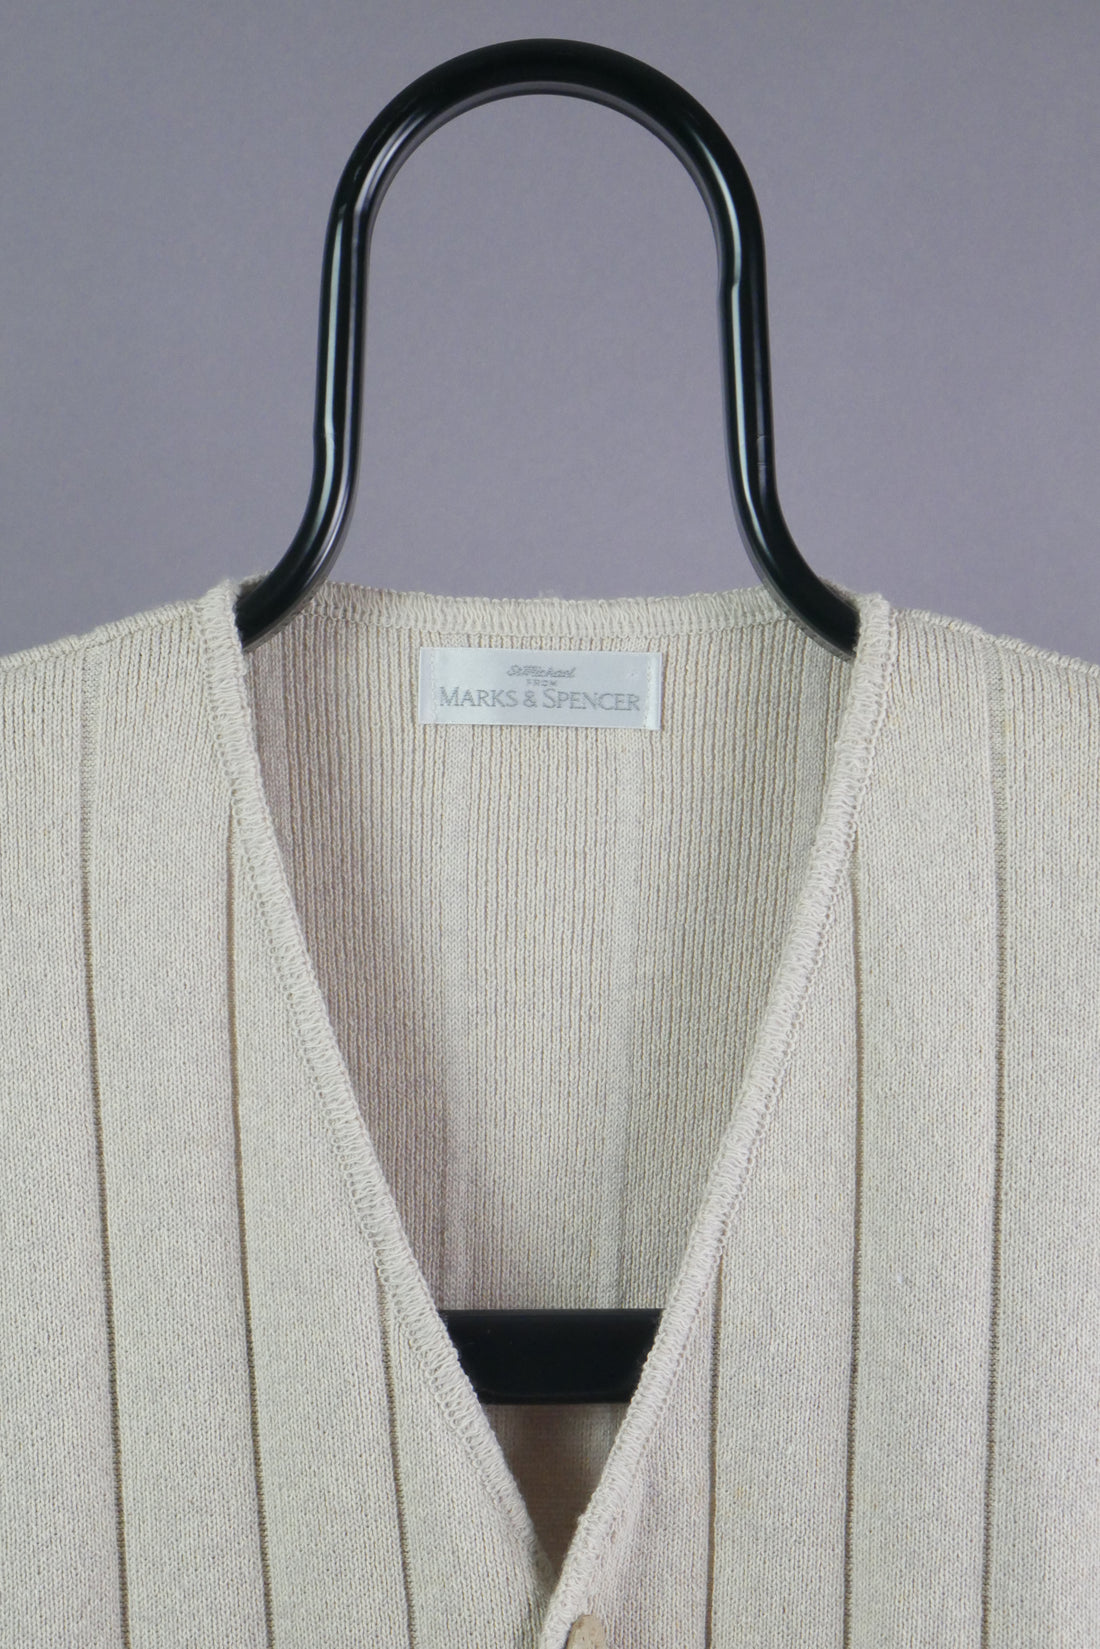 The Vintage Button Up Sweater Vest (XL)